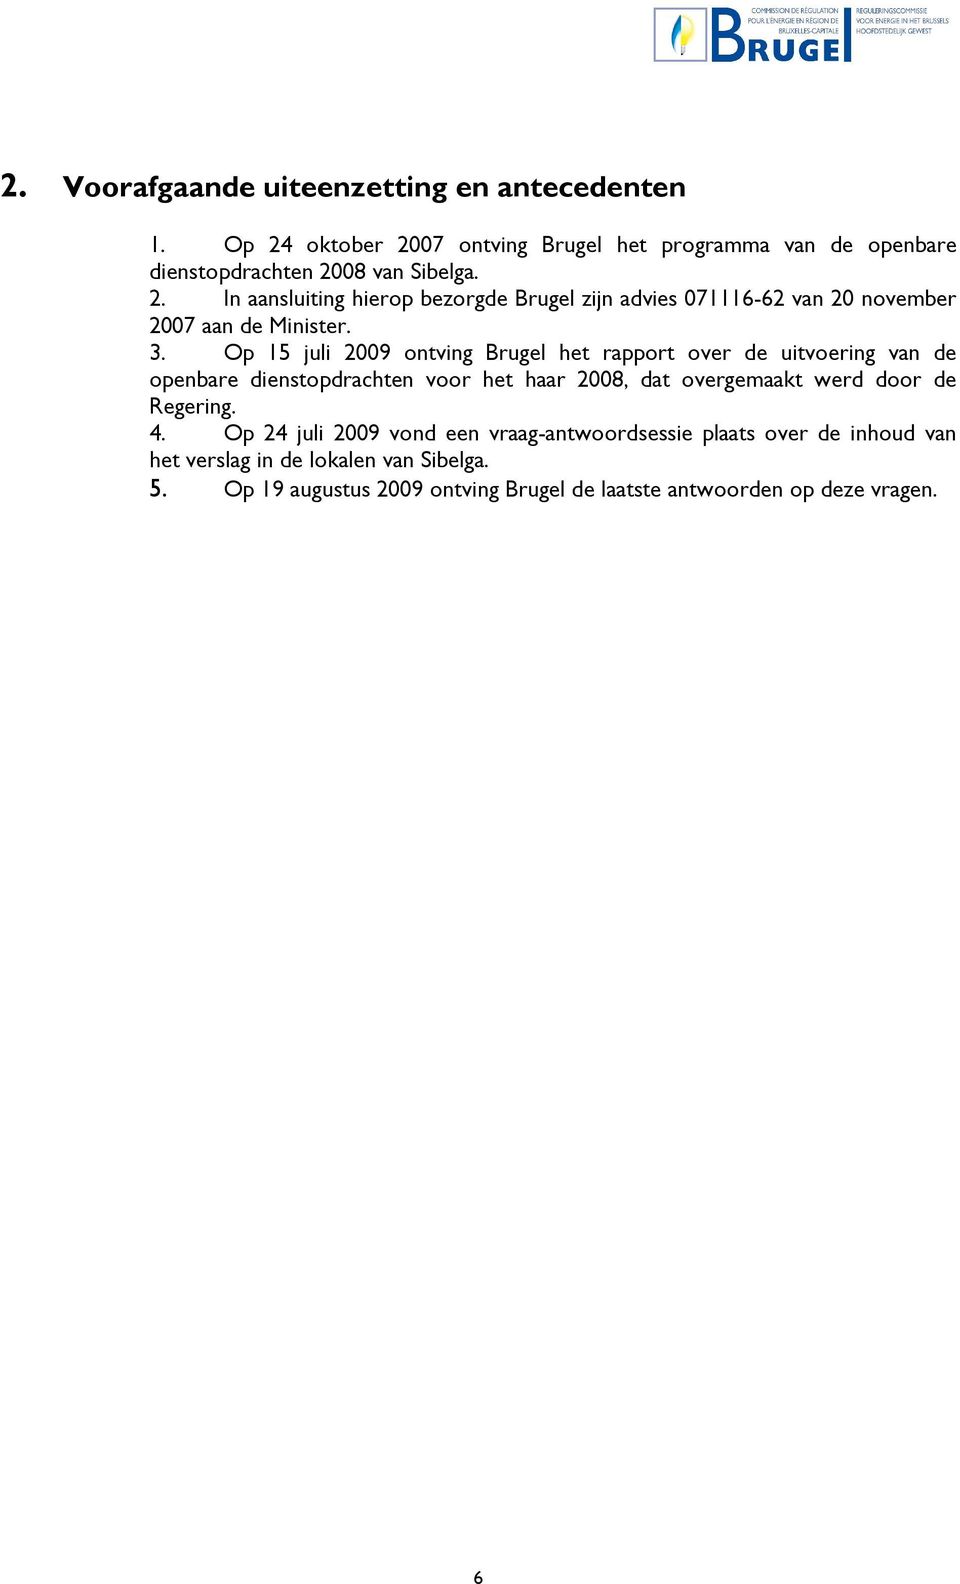 3. Op 15 juli 2009 ontving Brugel het rapport over de uitvoering van de openbare dienstopdrachten voor het haar 2008, dat overgemaakt werd door de